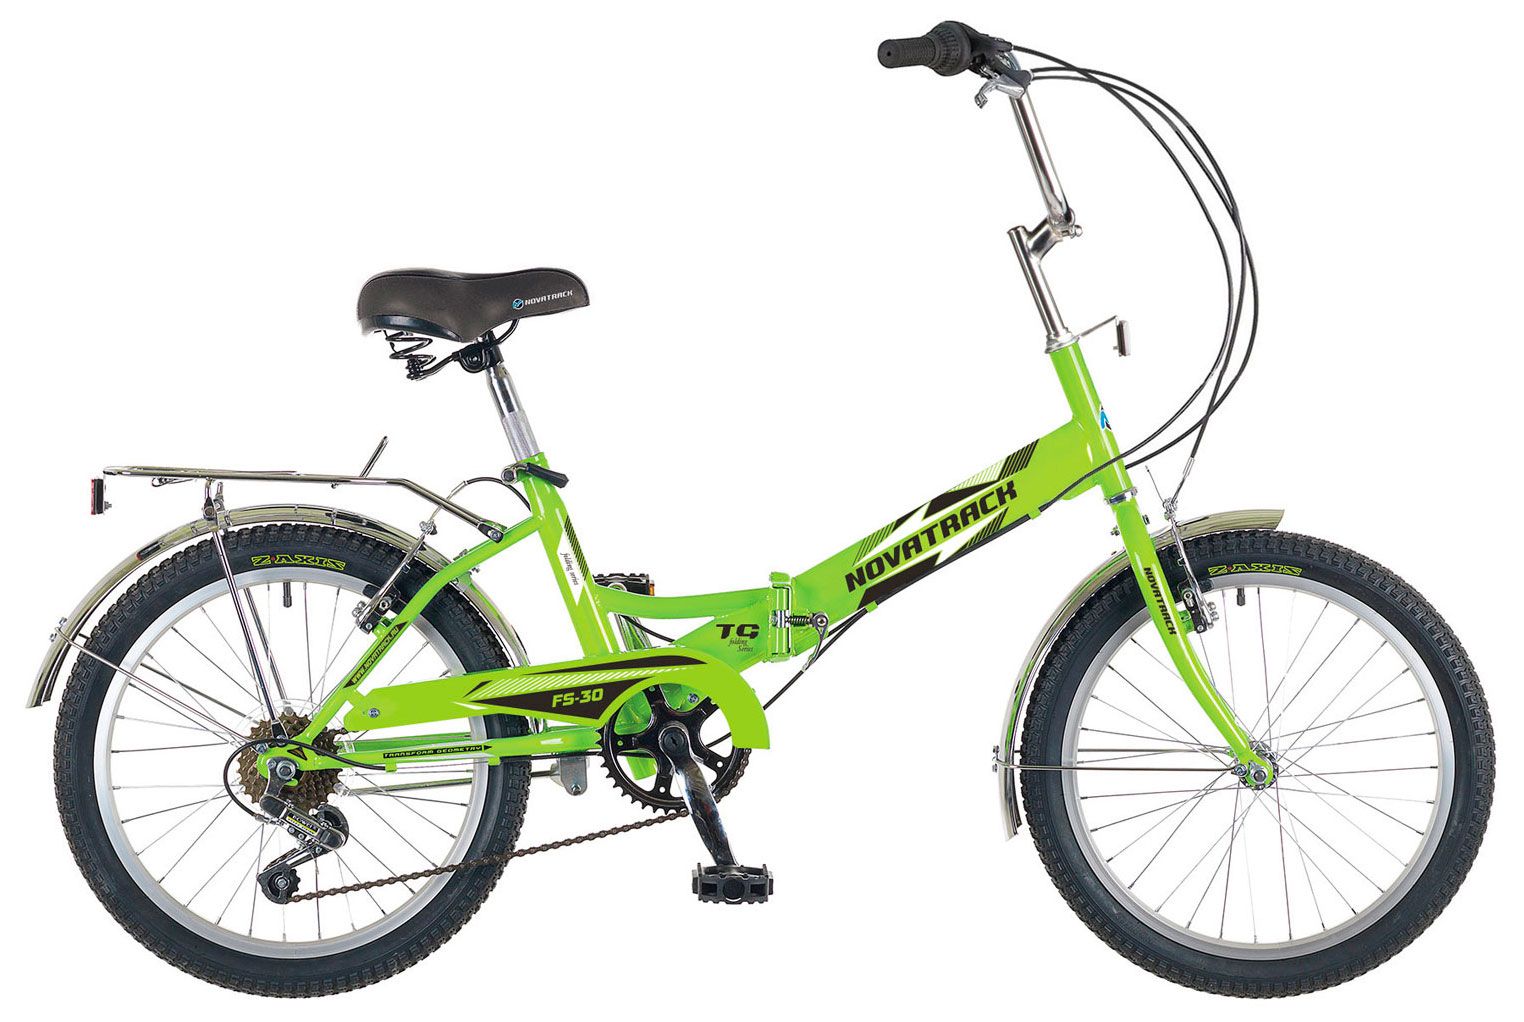  Отзывы о Трехколесный детский велосипед Novatrack FS30 20 2018